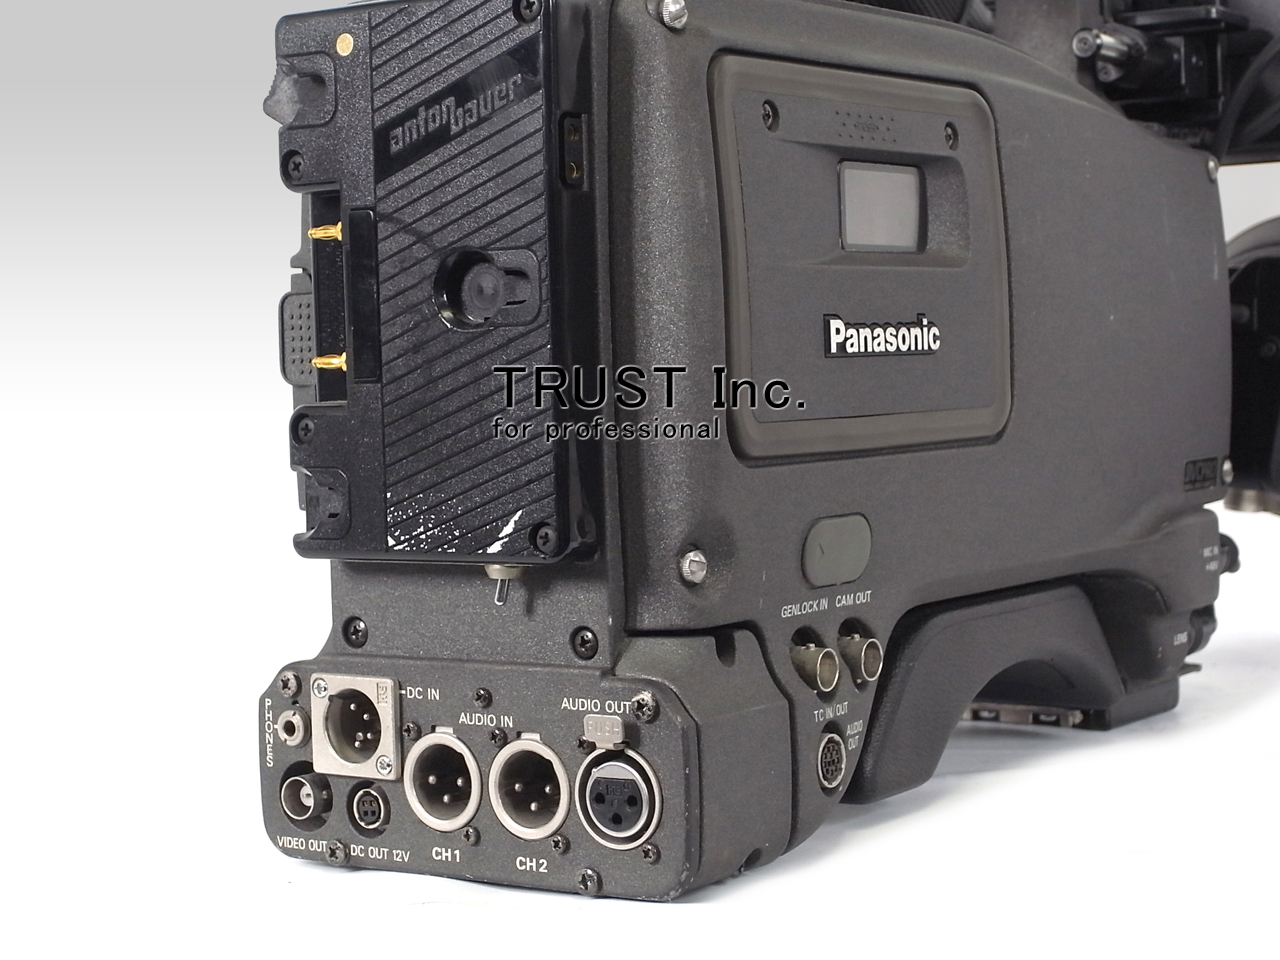 新着◇[中古]Panasonic 業務用 DVCPRO カメラレコーダー AJ-D700 + FUJINON レンズ S18x6.7BERM4 + ACアダプタ AU-B110 セット 現状品 (2) プロ用、業務用